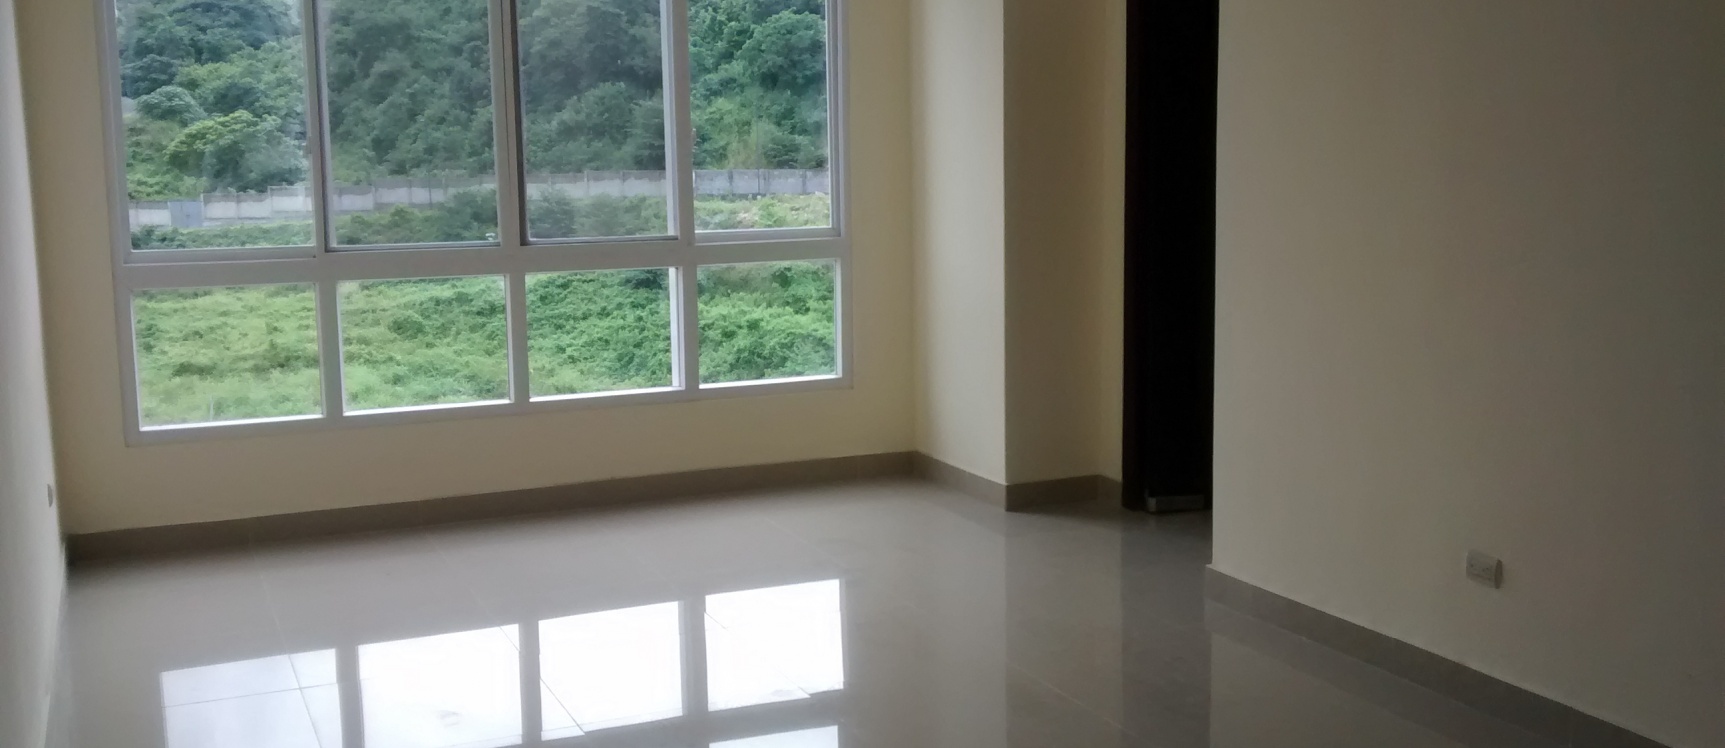 GeoBienes - Espectacular departamento en venta por estrenar en Los Ceibos Guayaquil - Plusvalia Guayaquil Casas de venta y alquiler Inmobiliaria Ecuador